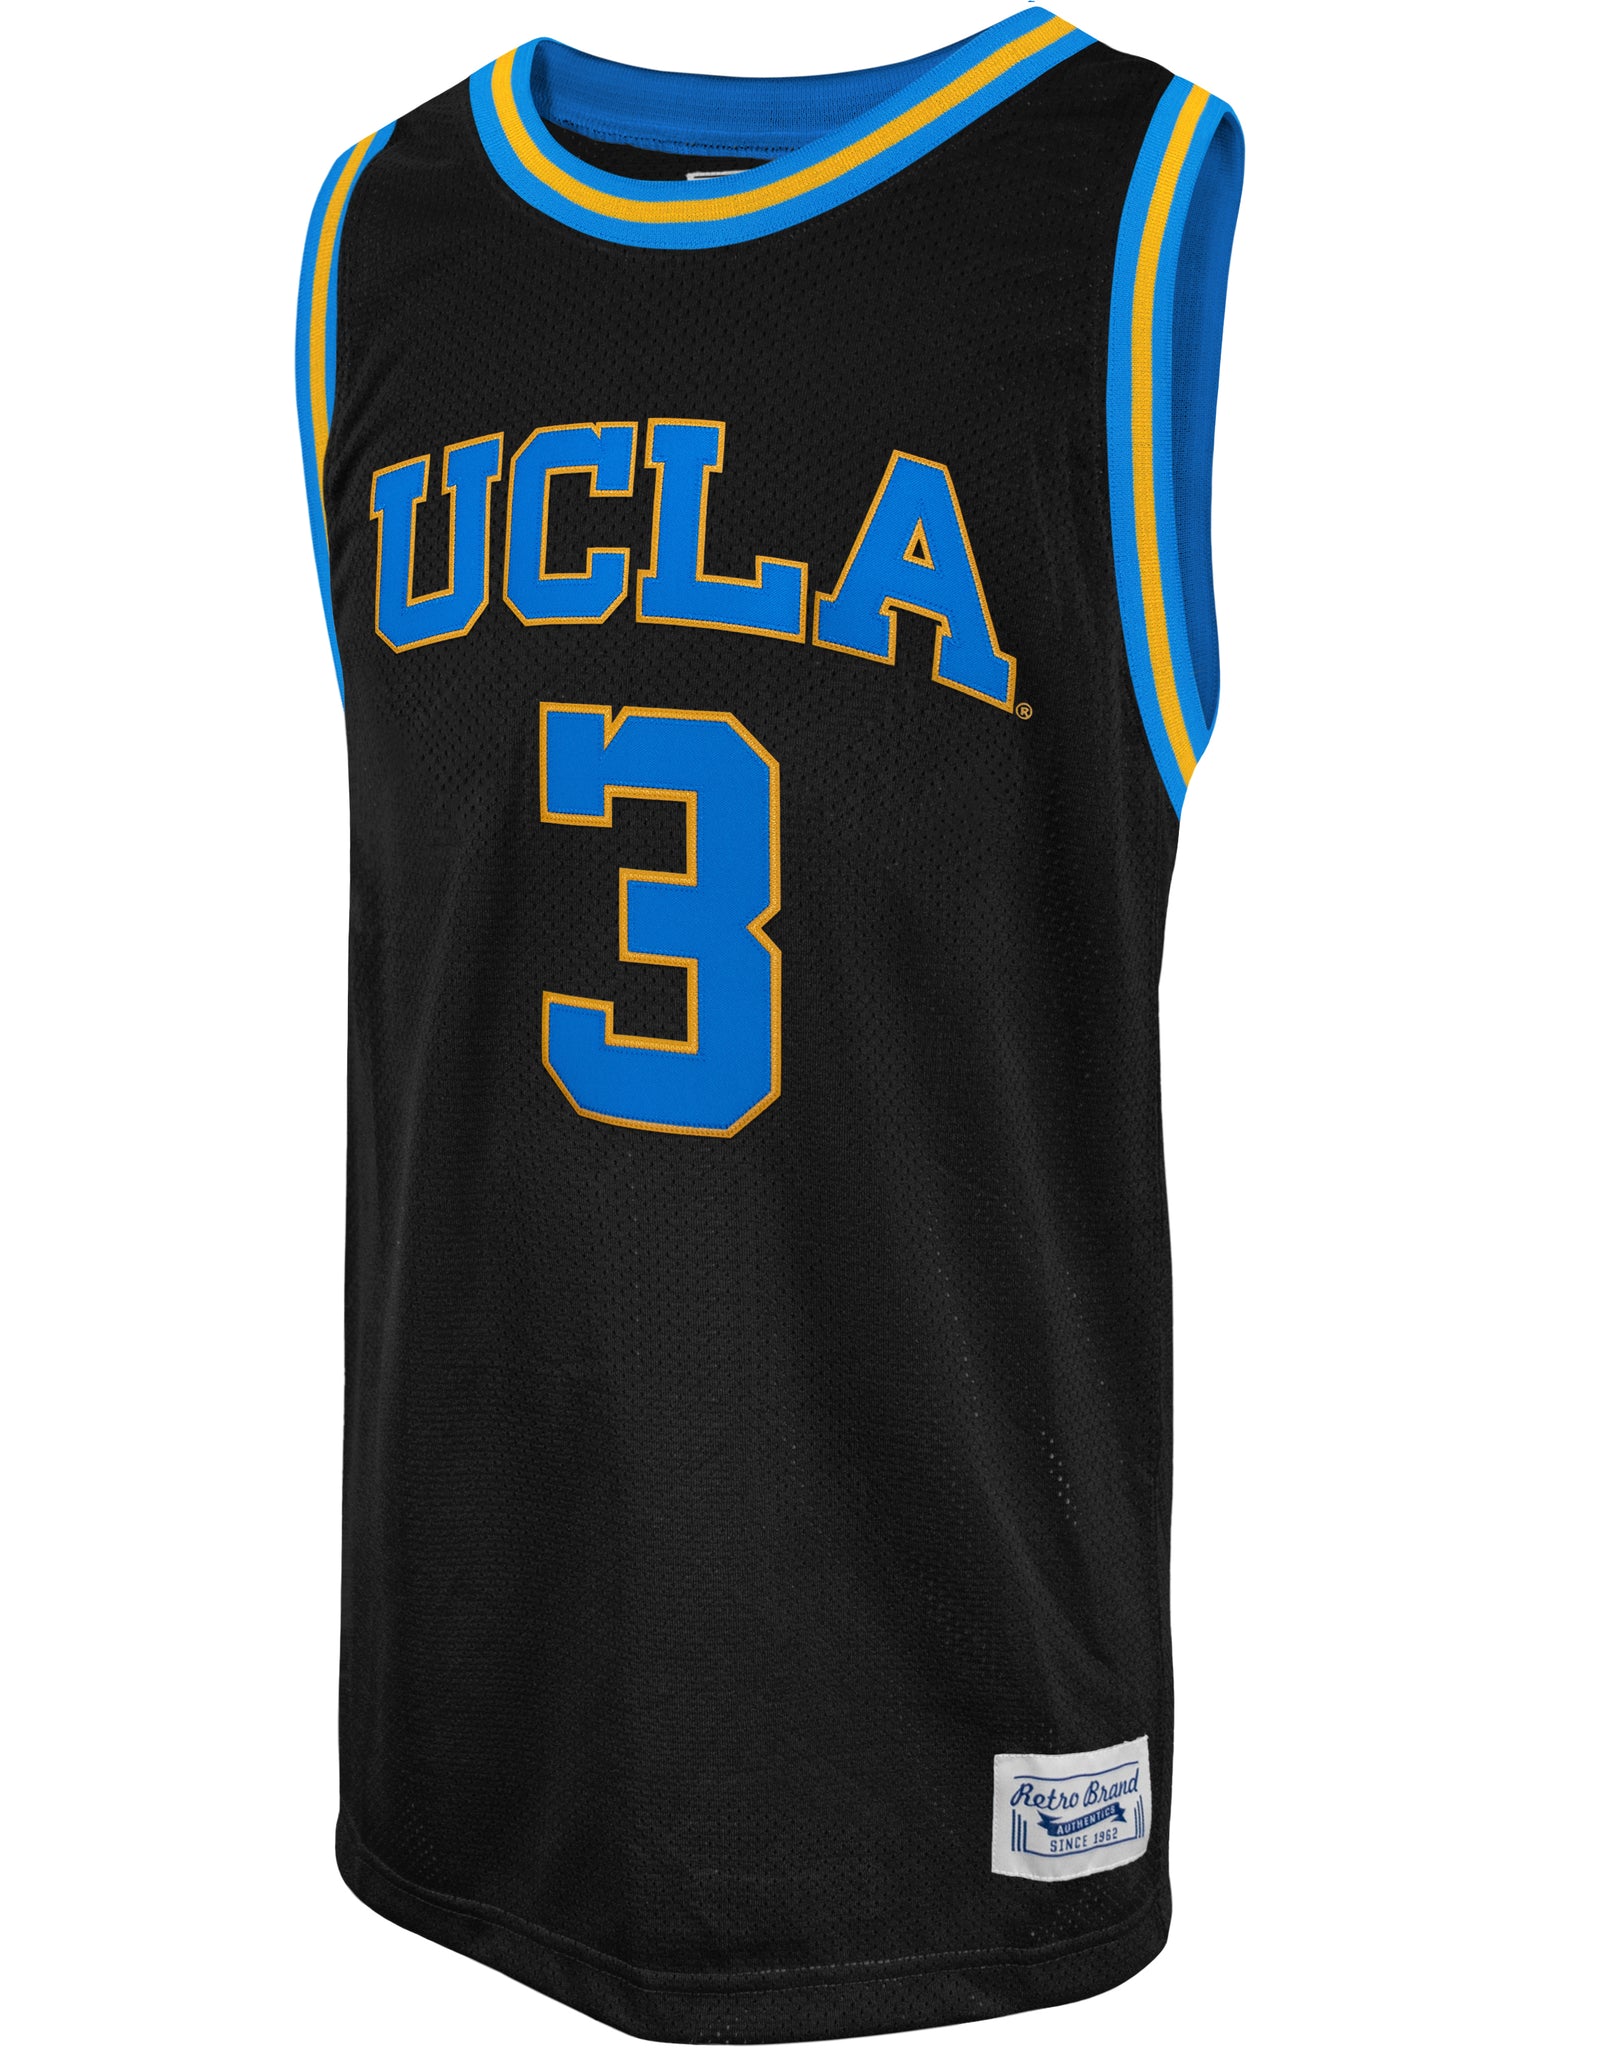 Retro Brand UCLA Basketball Black Jersey #3 Juzang